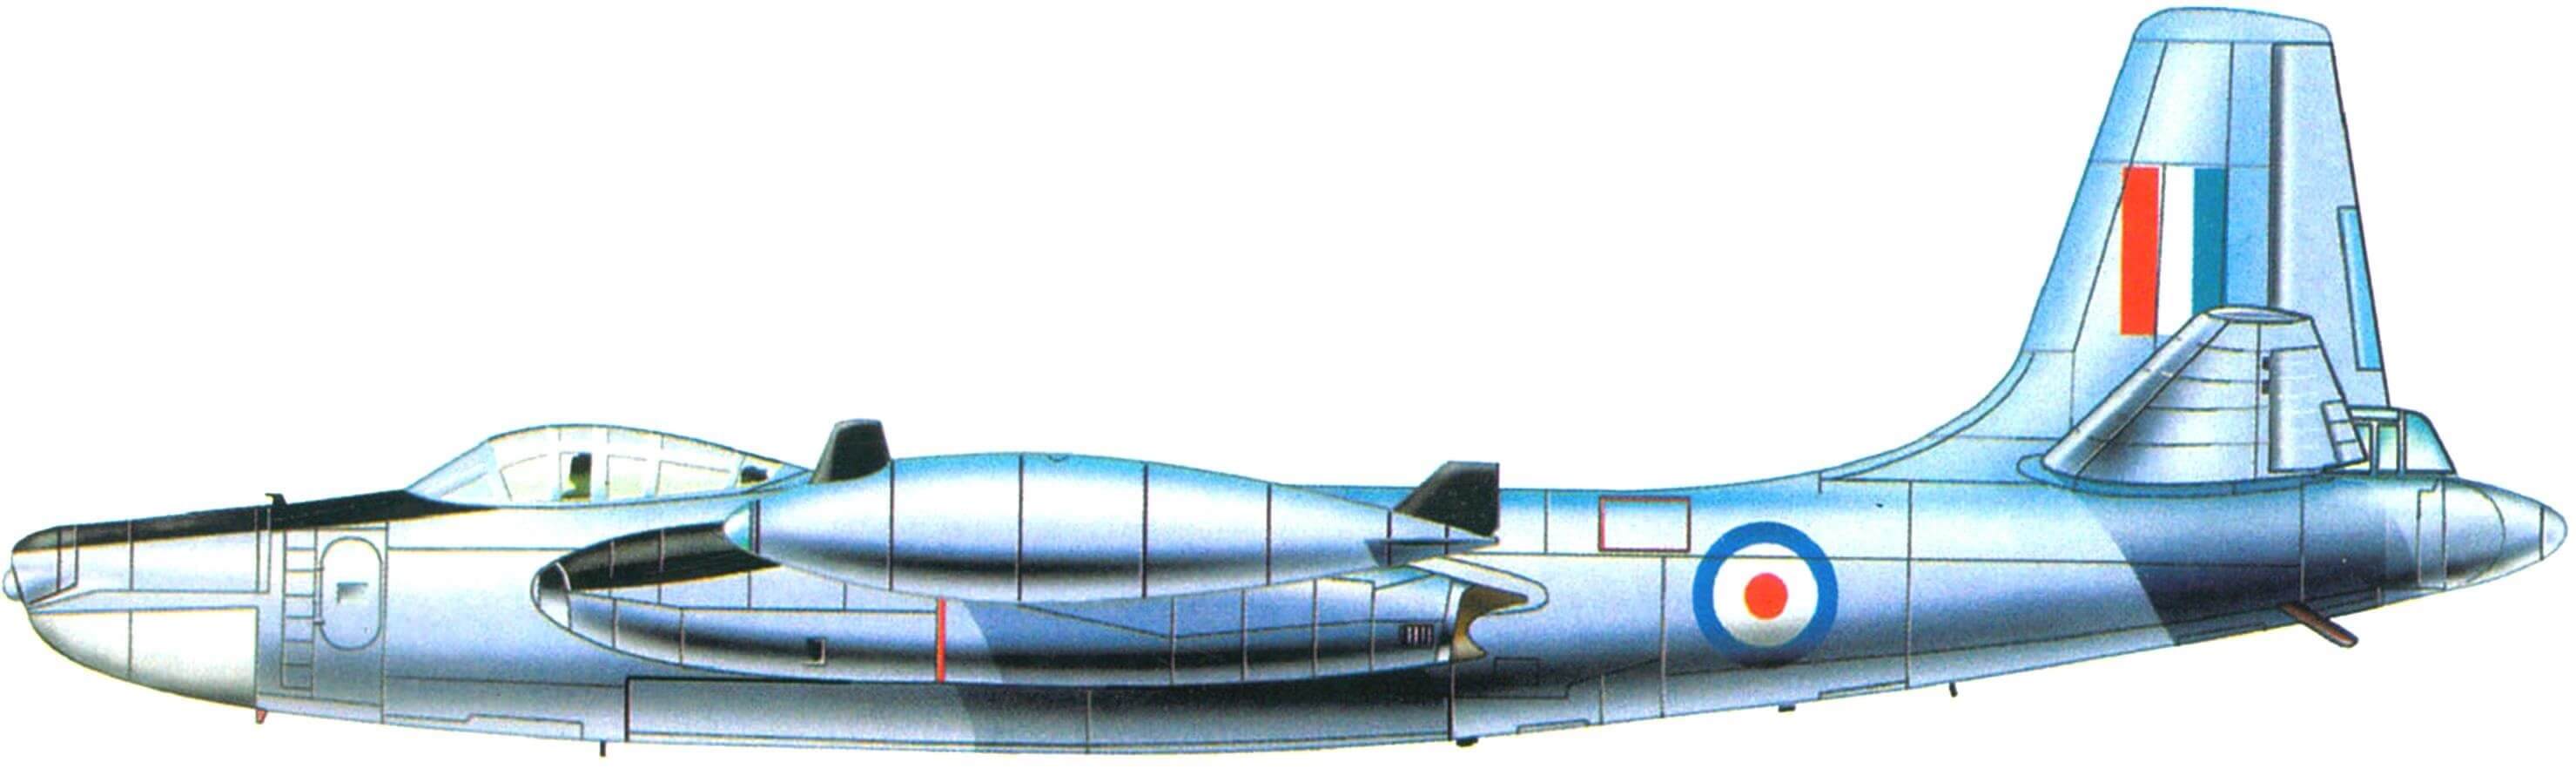  RB-45C-1 с опознавательными знаками ВВС Великобритании. Использовался в разведывательных полетах над СССР (1952-1953 гг.)